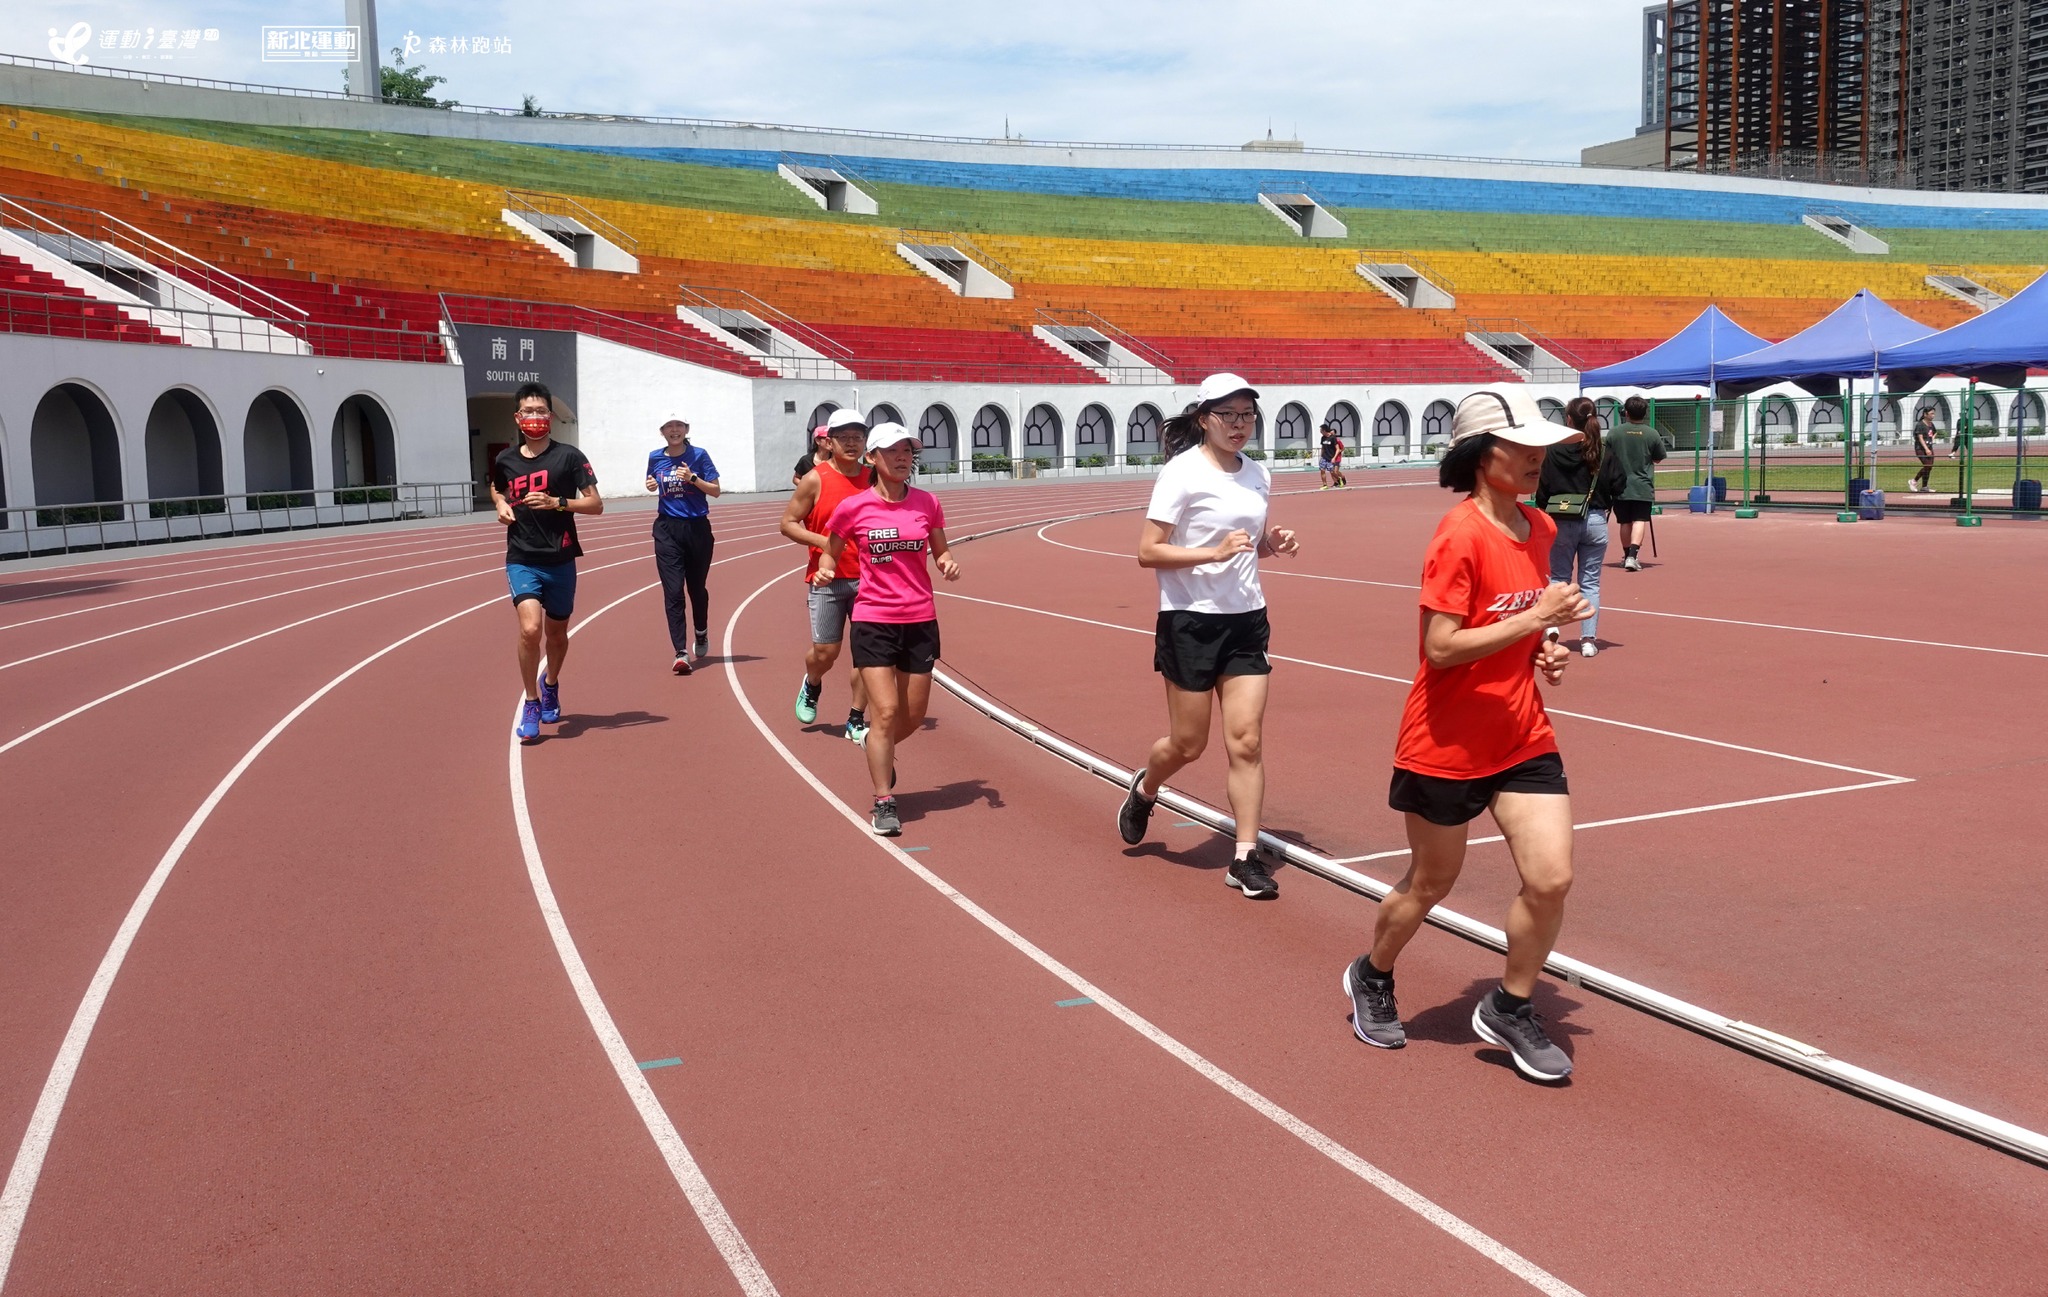 【新北運動熱區】結合世壯運競賽種類開設多樣運動課程